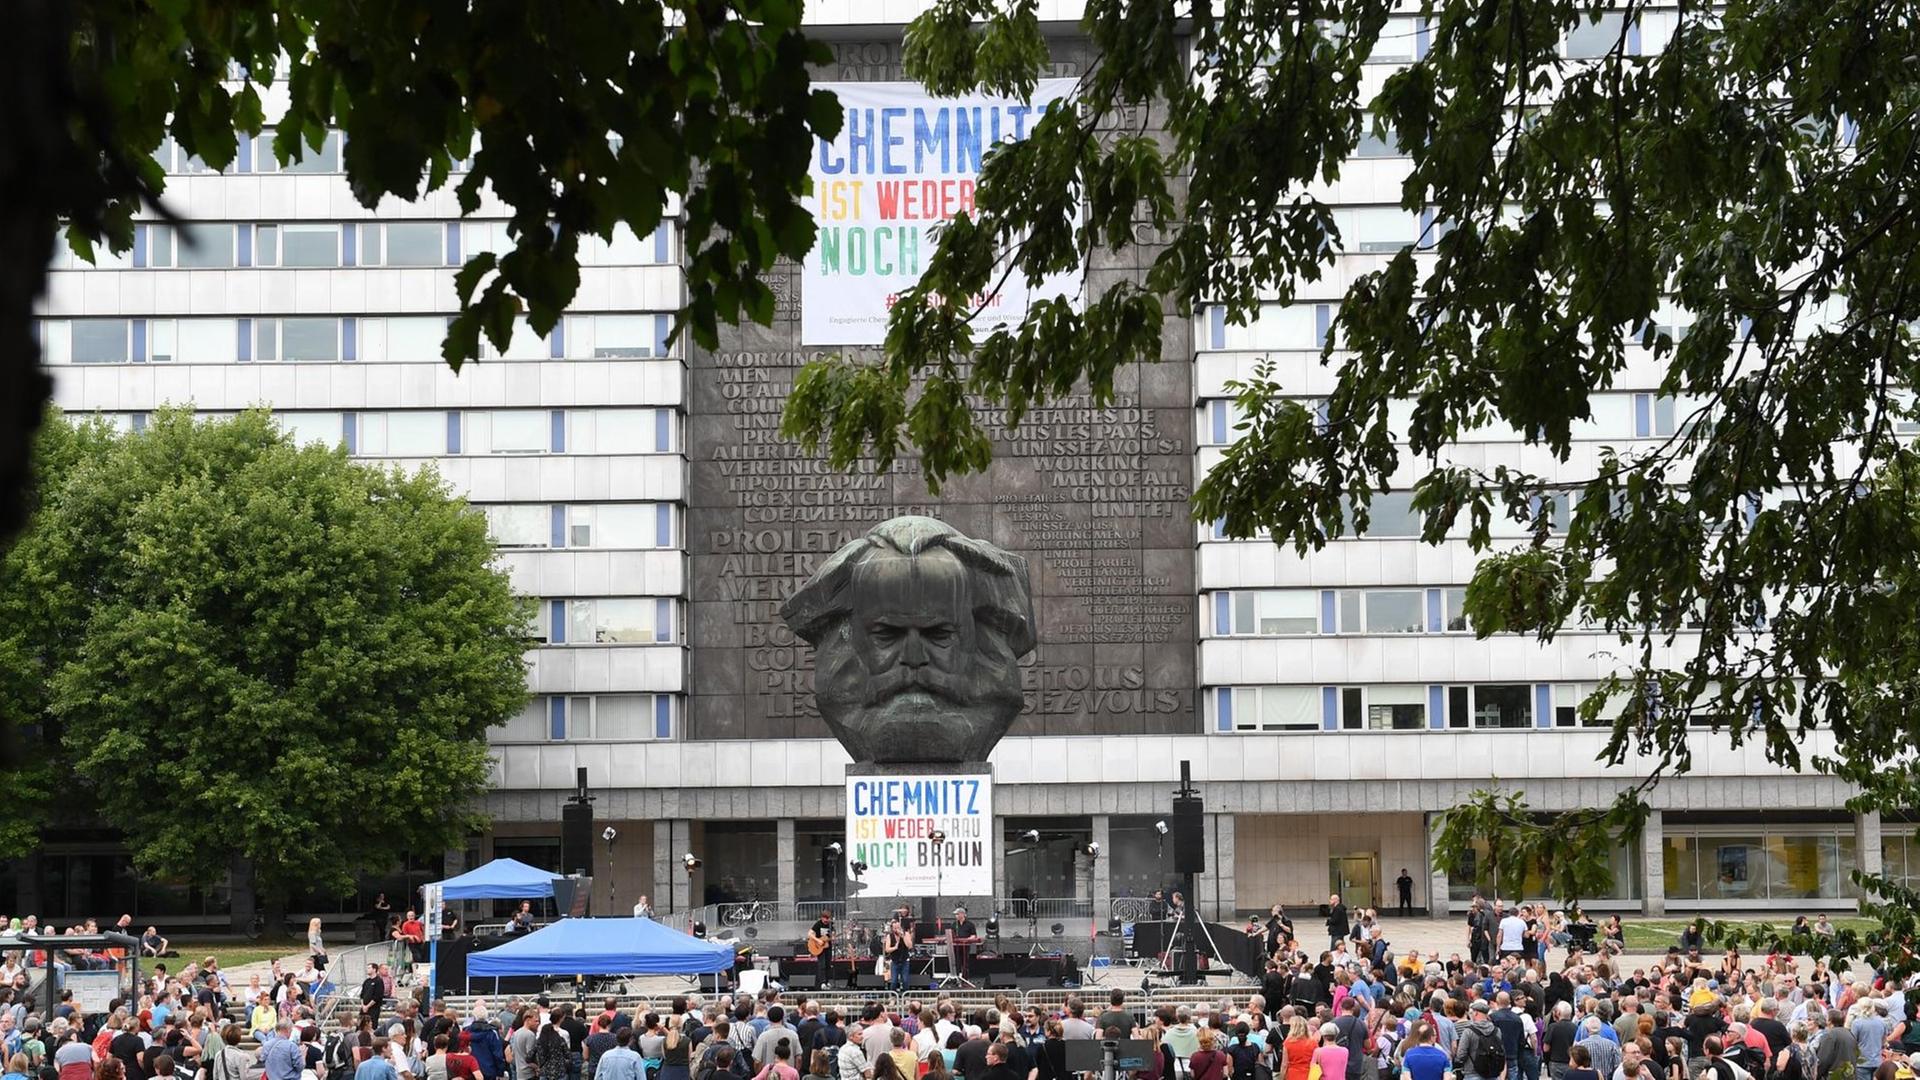 Zuschauer verfolgen vor dem Karl-Marx-Monument im Zentrum von Chemnitz ein Konzert verschiedener Bands unter dem Motto "#wirsindmehr".